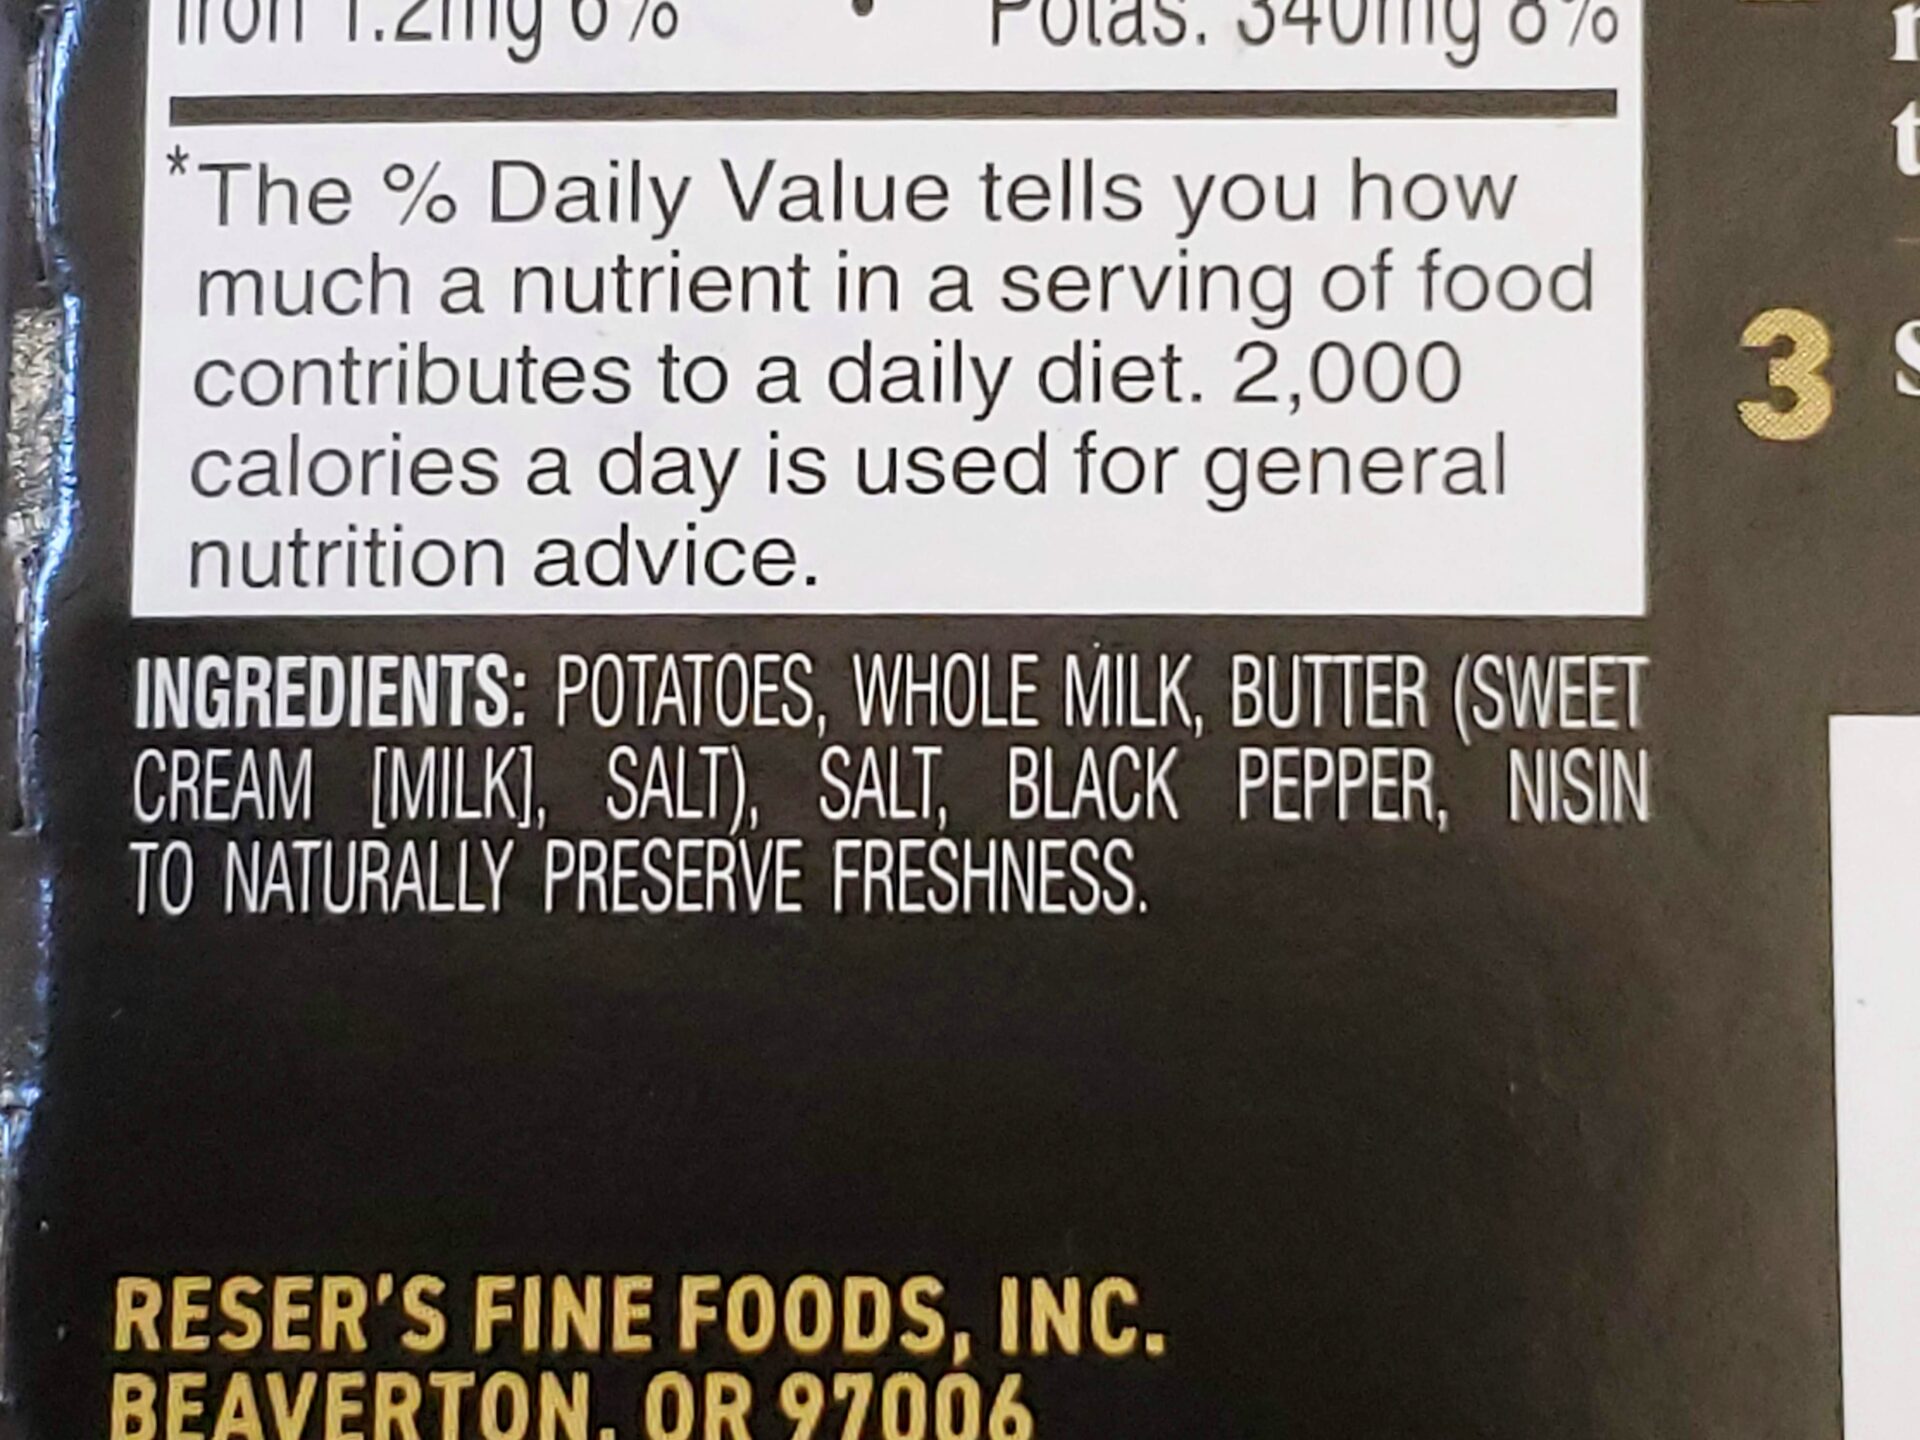 Main-St-Bistro-Mashed-Potato-Ingredients